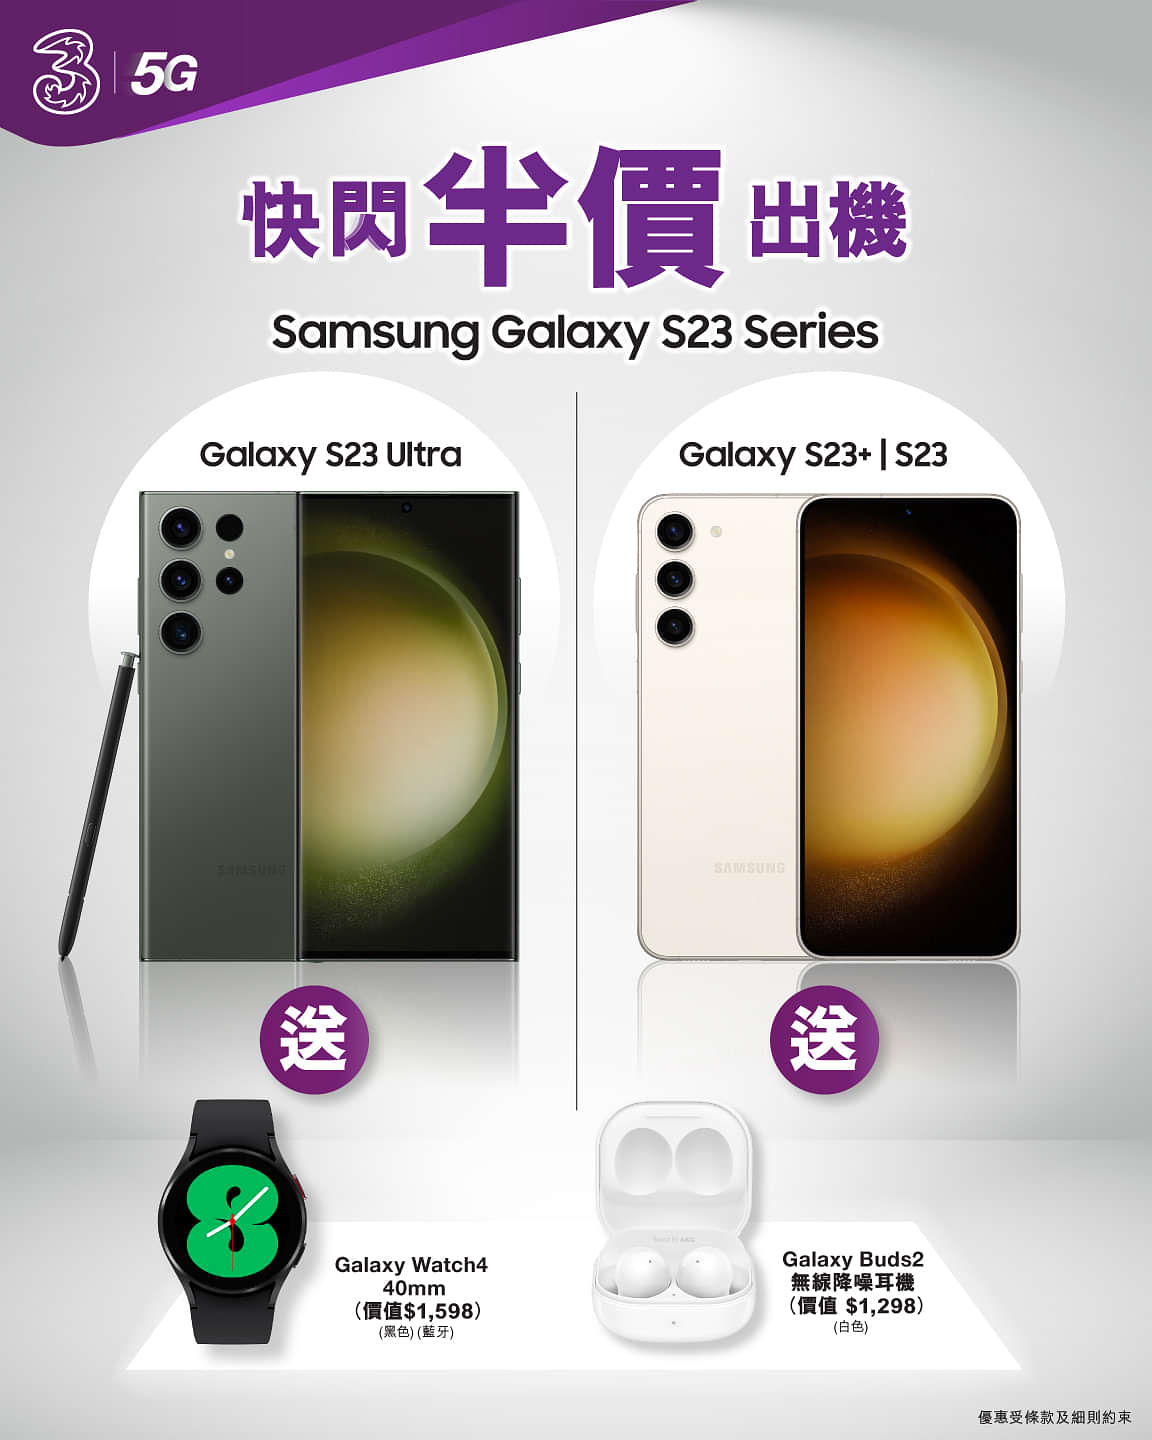 3HK 寬頻/5G優惠： Galaxy S23 Series快閃限定 半價出機